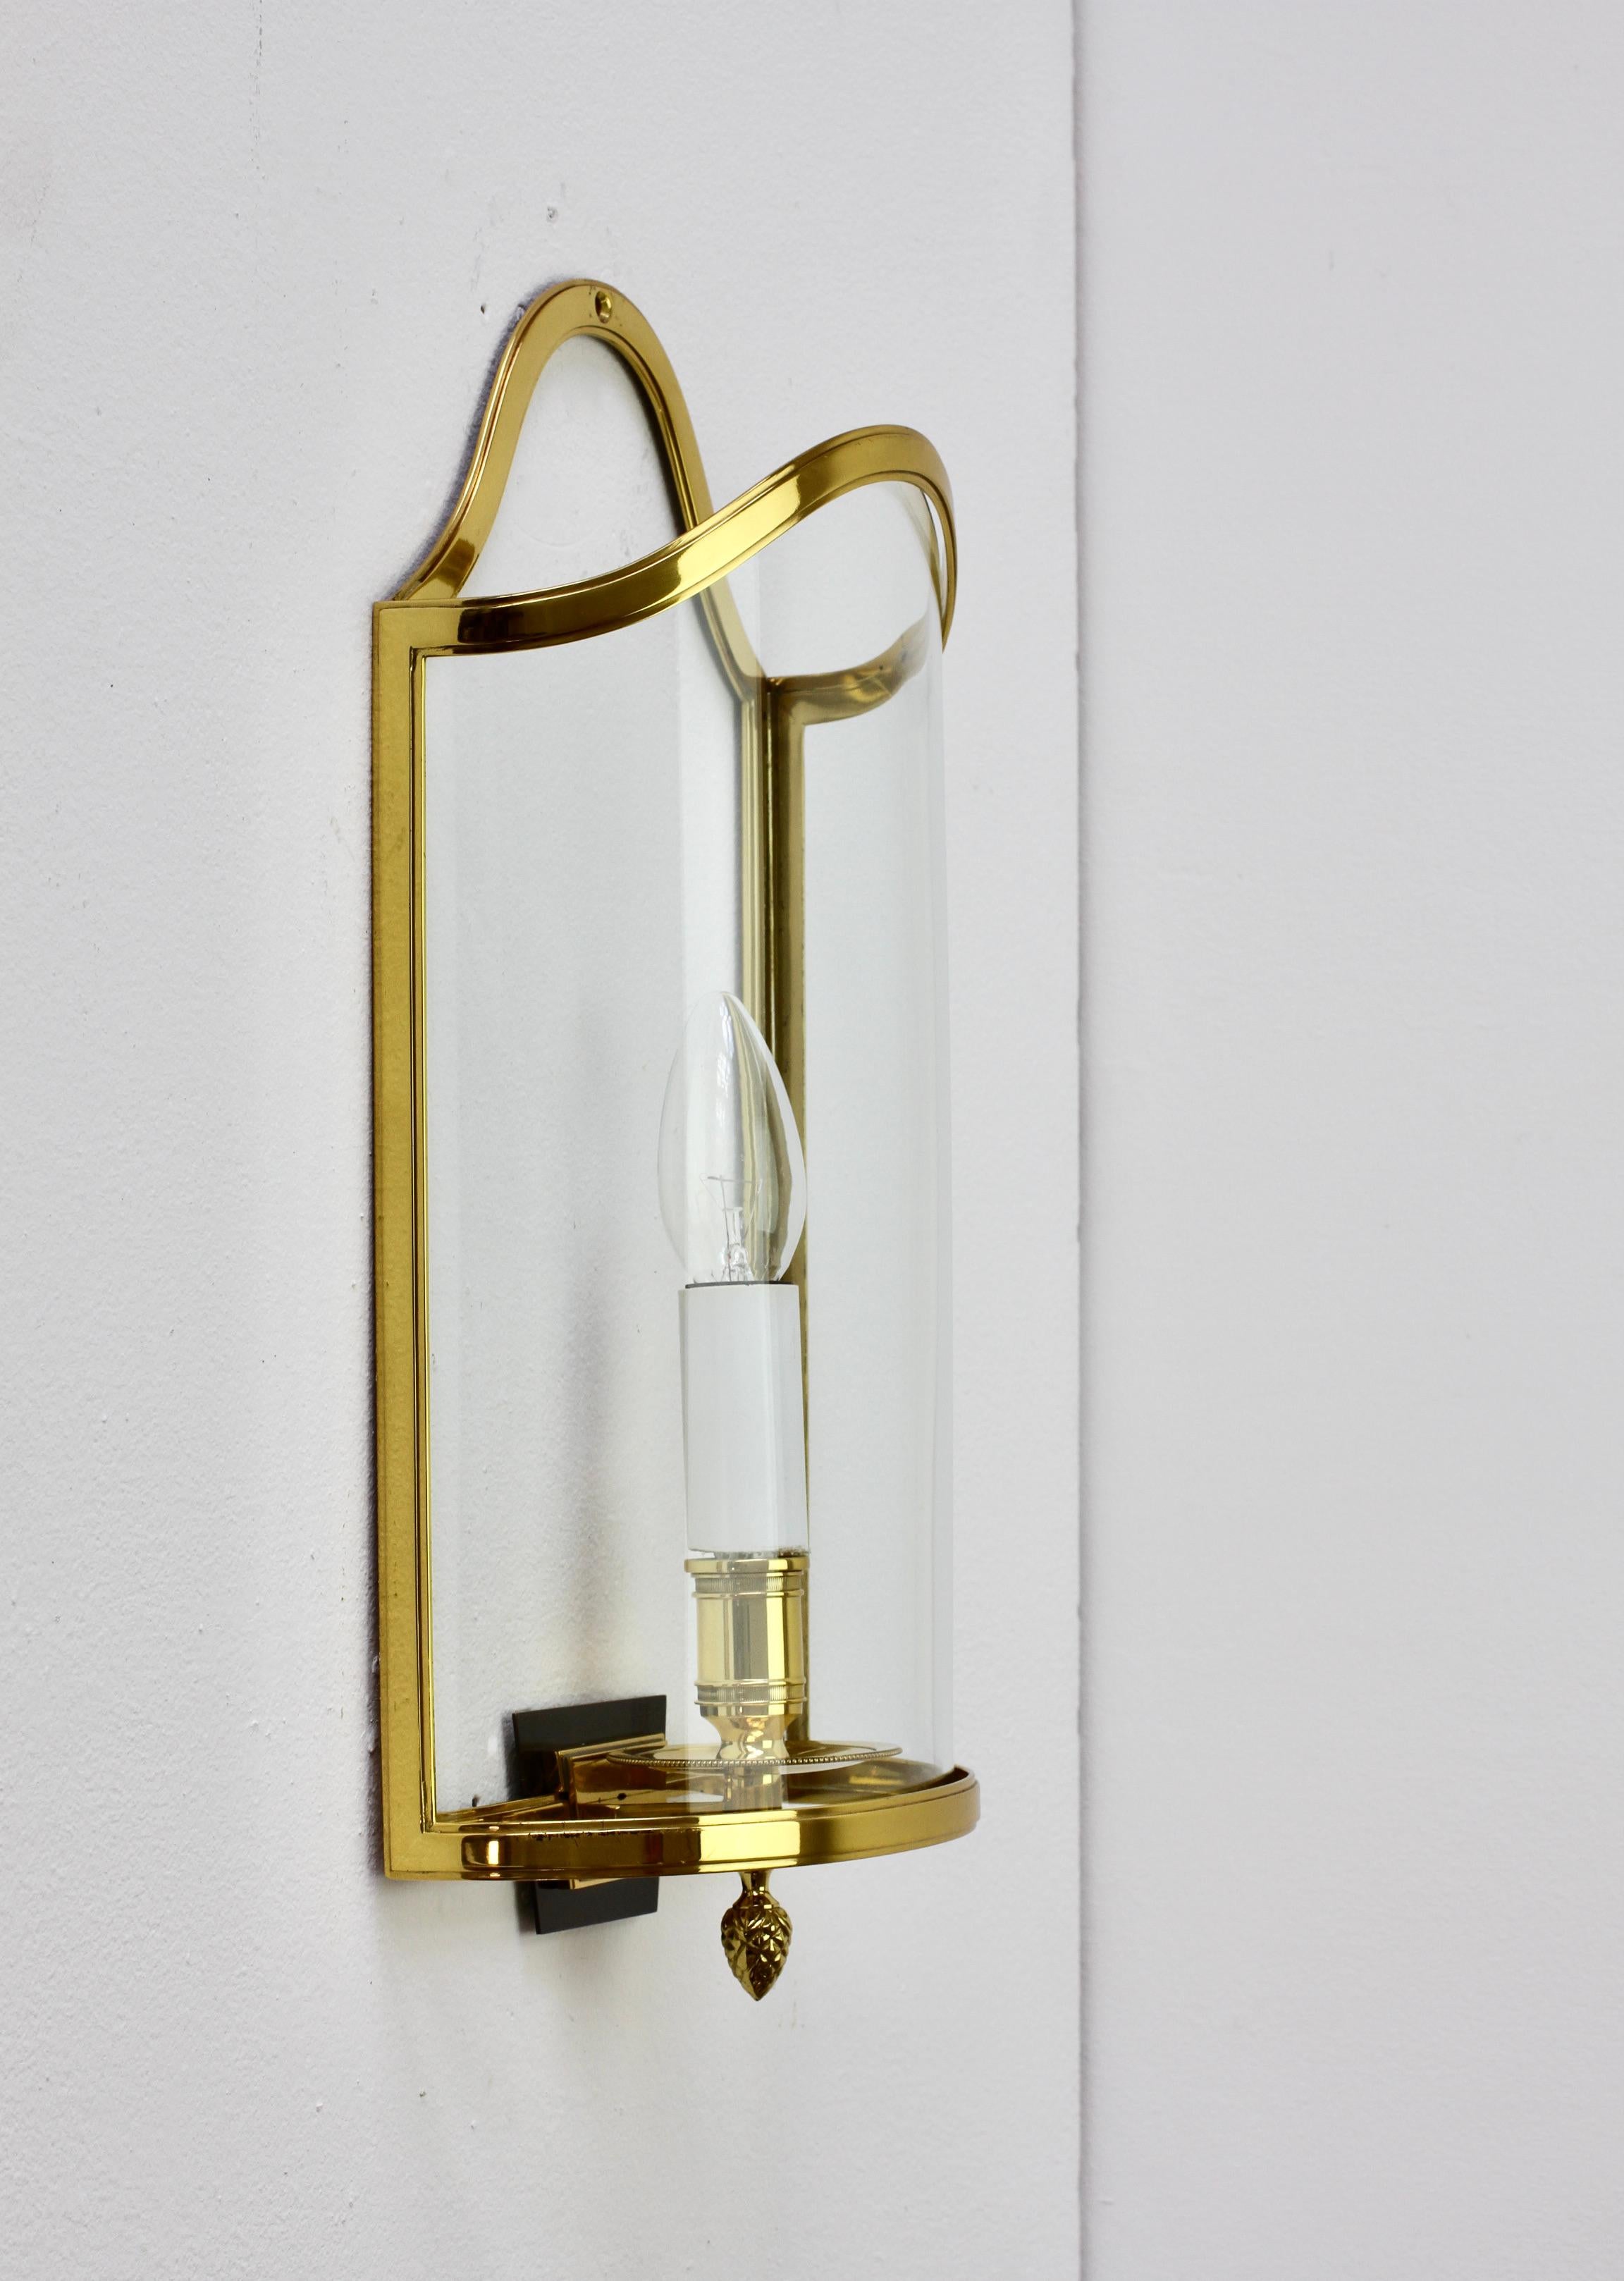 1 of 5 Maison Jansen Style Polished Brass Sconces by Vereinigte Werkstätten For Sale 1